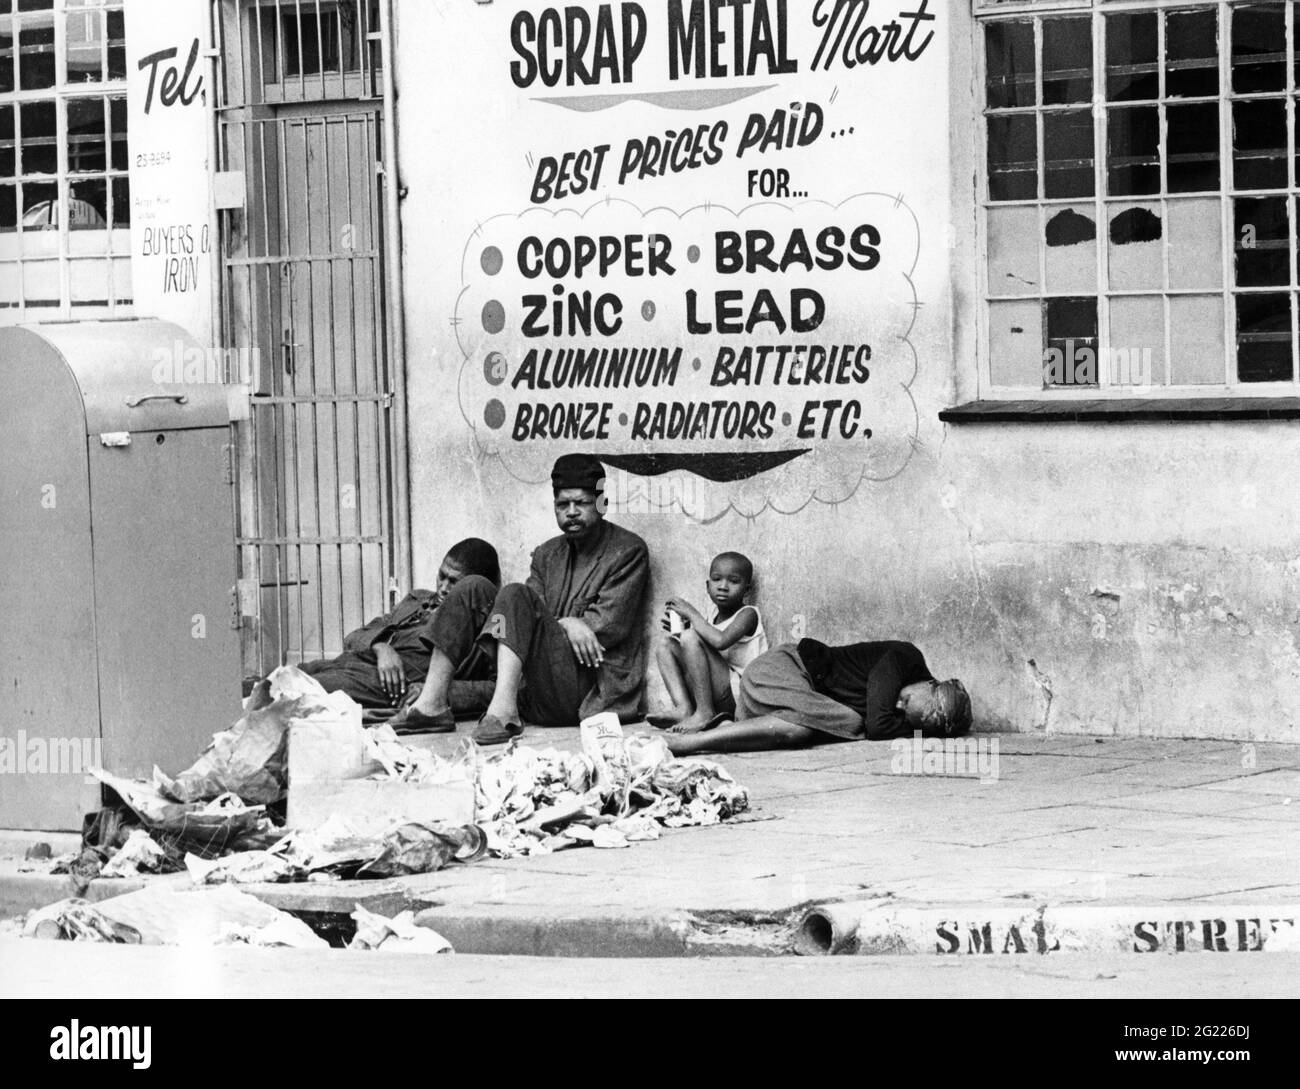 Geographie/Reisen, Südafrika, Johannesburg, Soweto, arme Menschen in ftnt eines scap-Metallmarkts, ZUSÄTZLICHE RECHTE-CLEARANCE-INFO-NOT-AVAILABLE Stockfoto